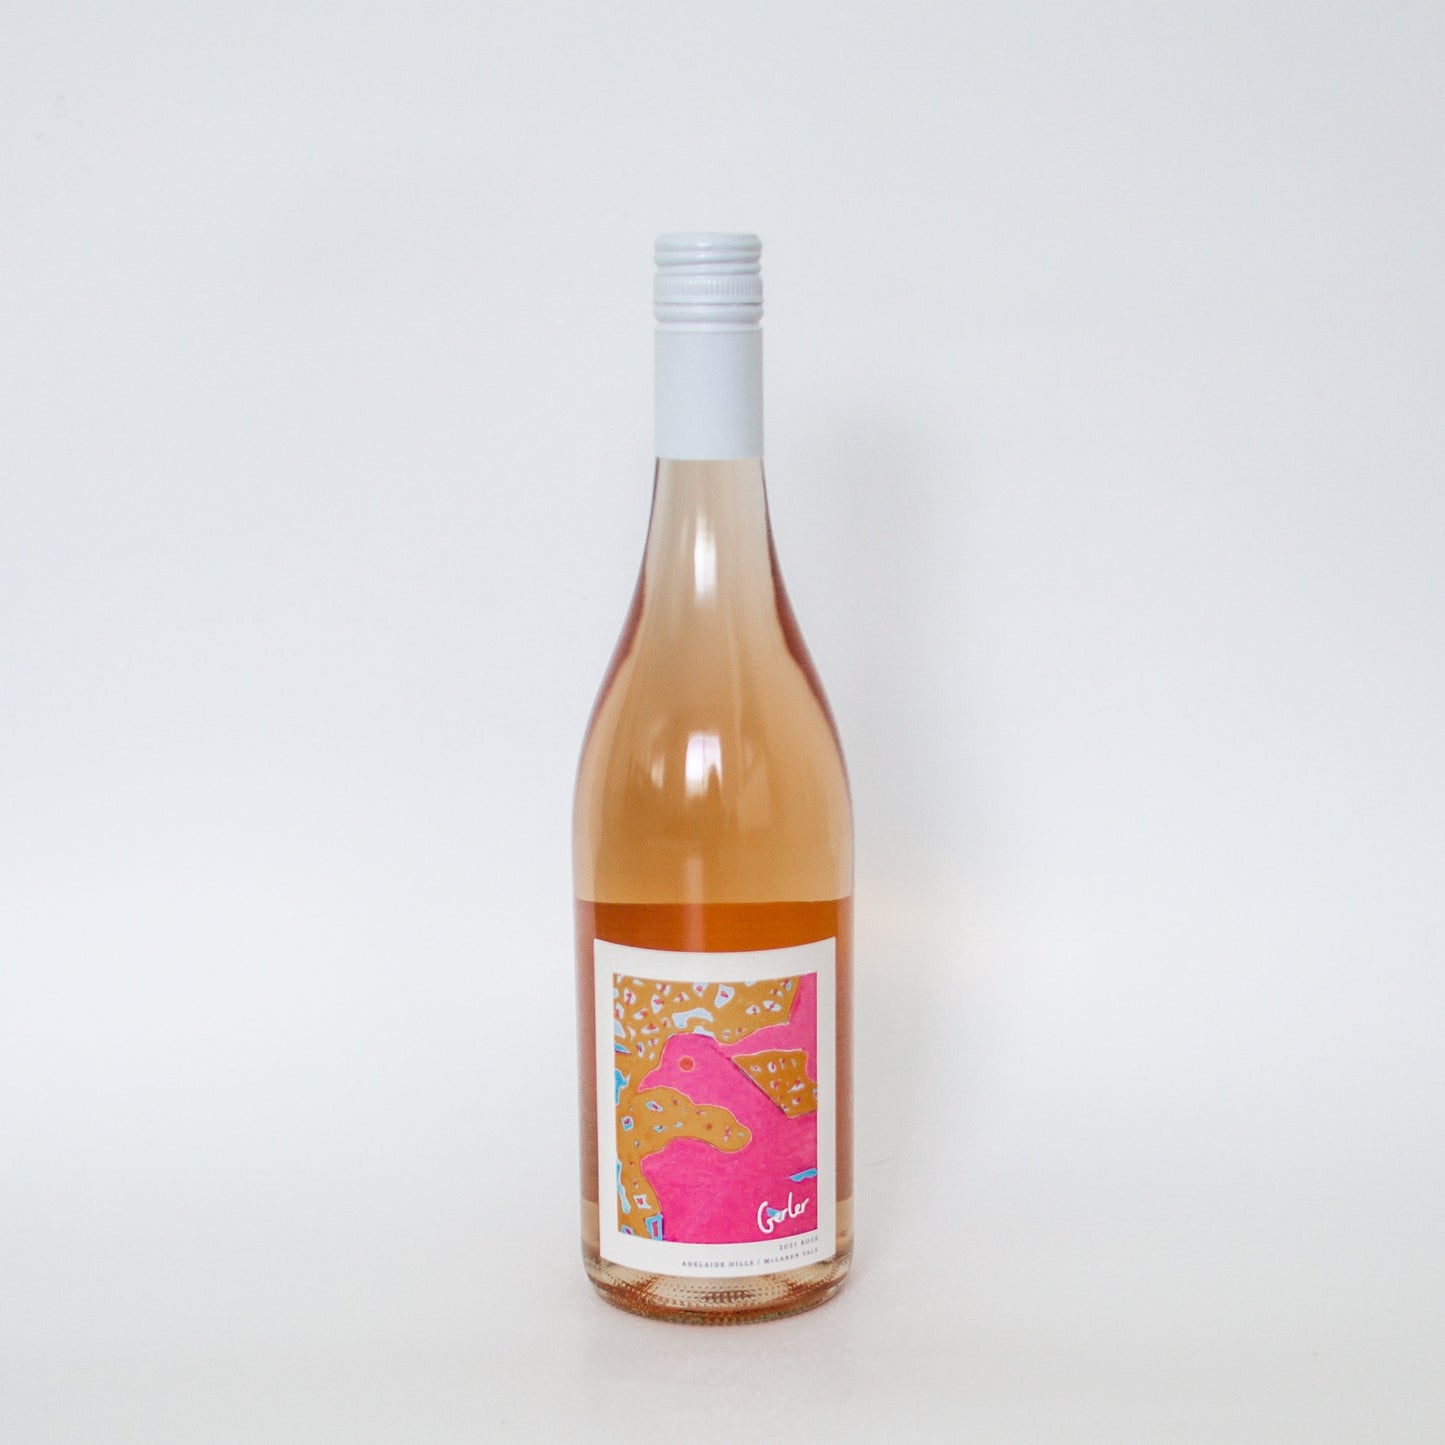 2020 Merlot / Grenache Rosé by City Winery